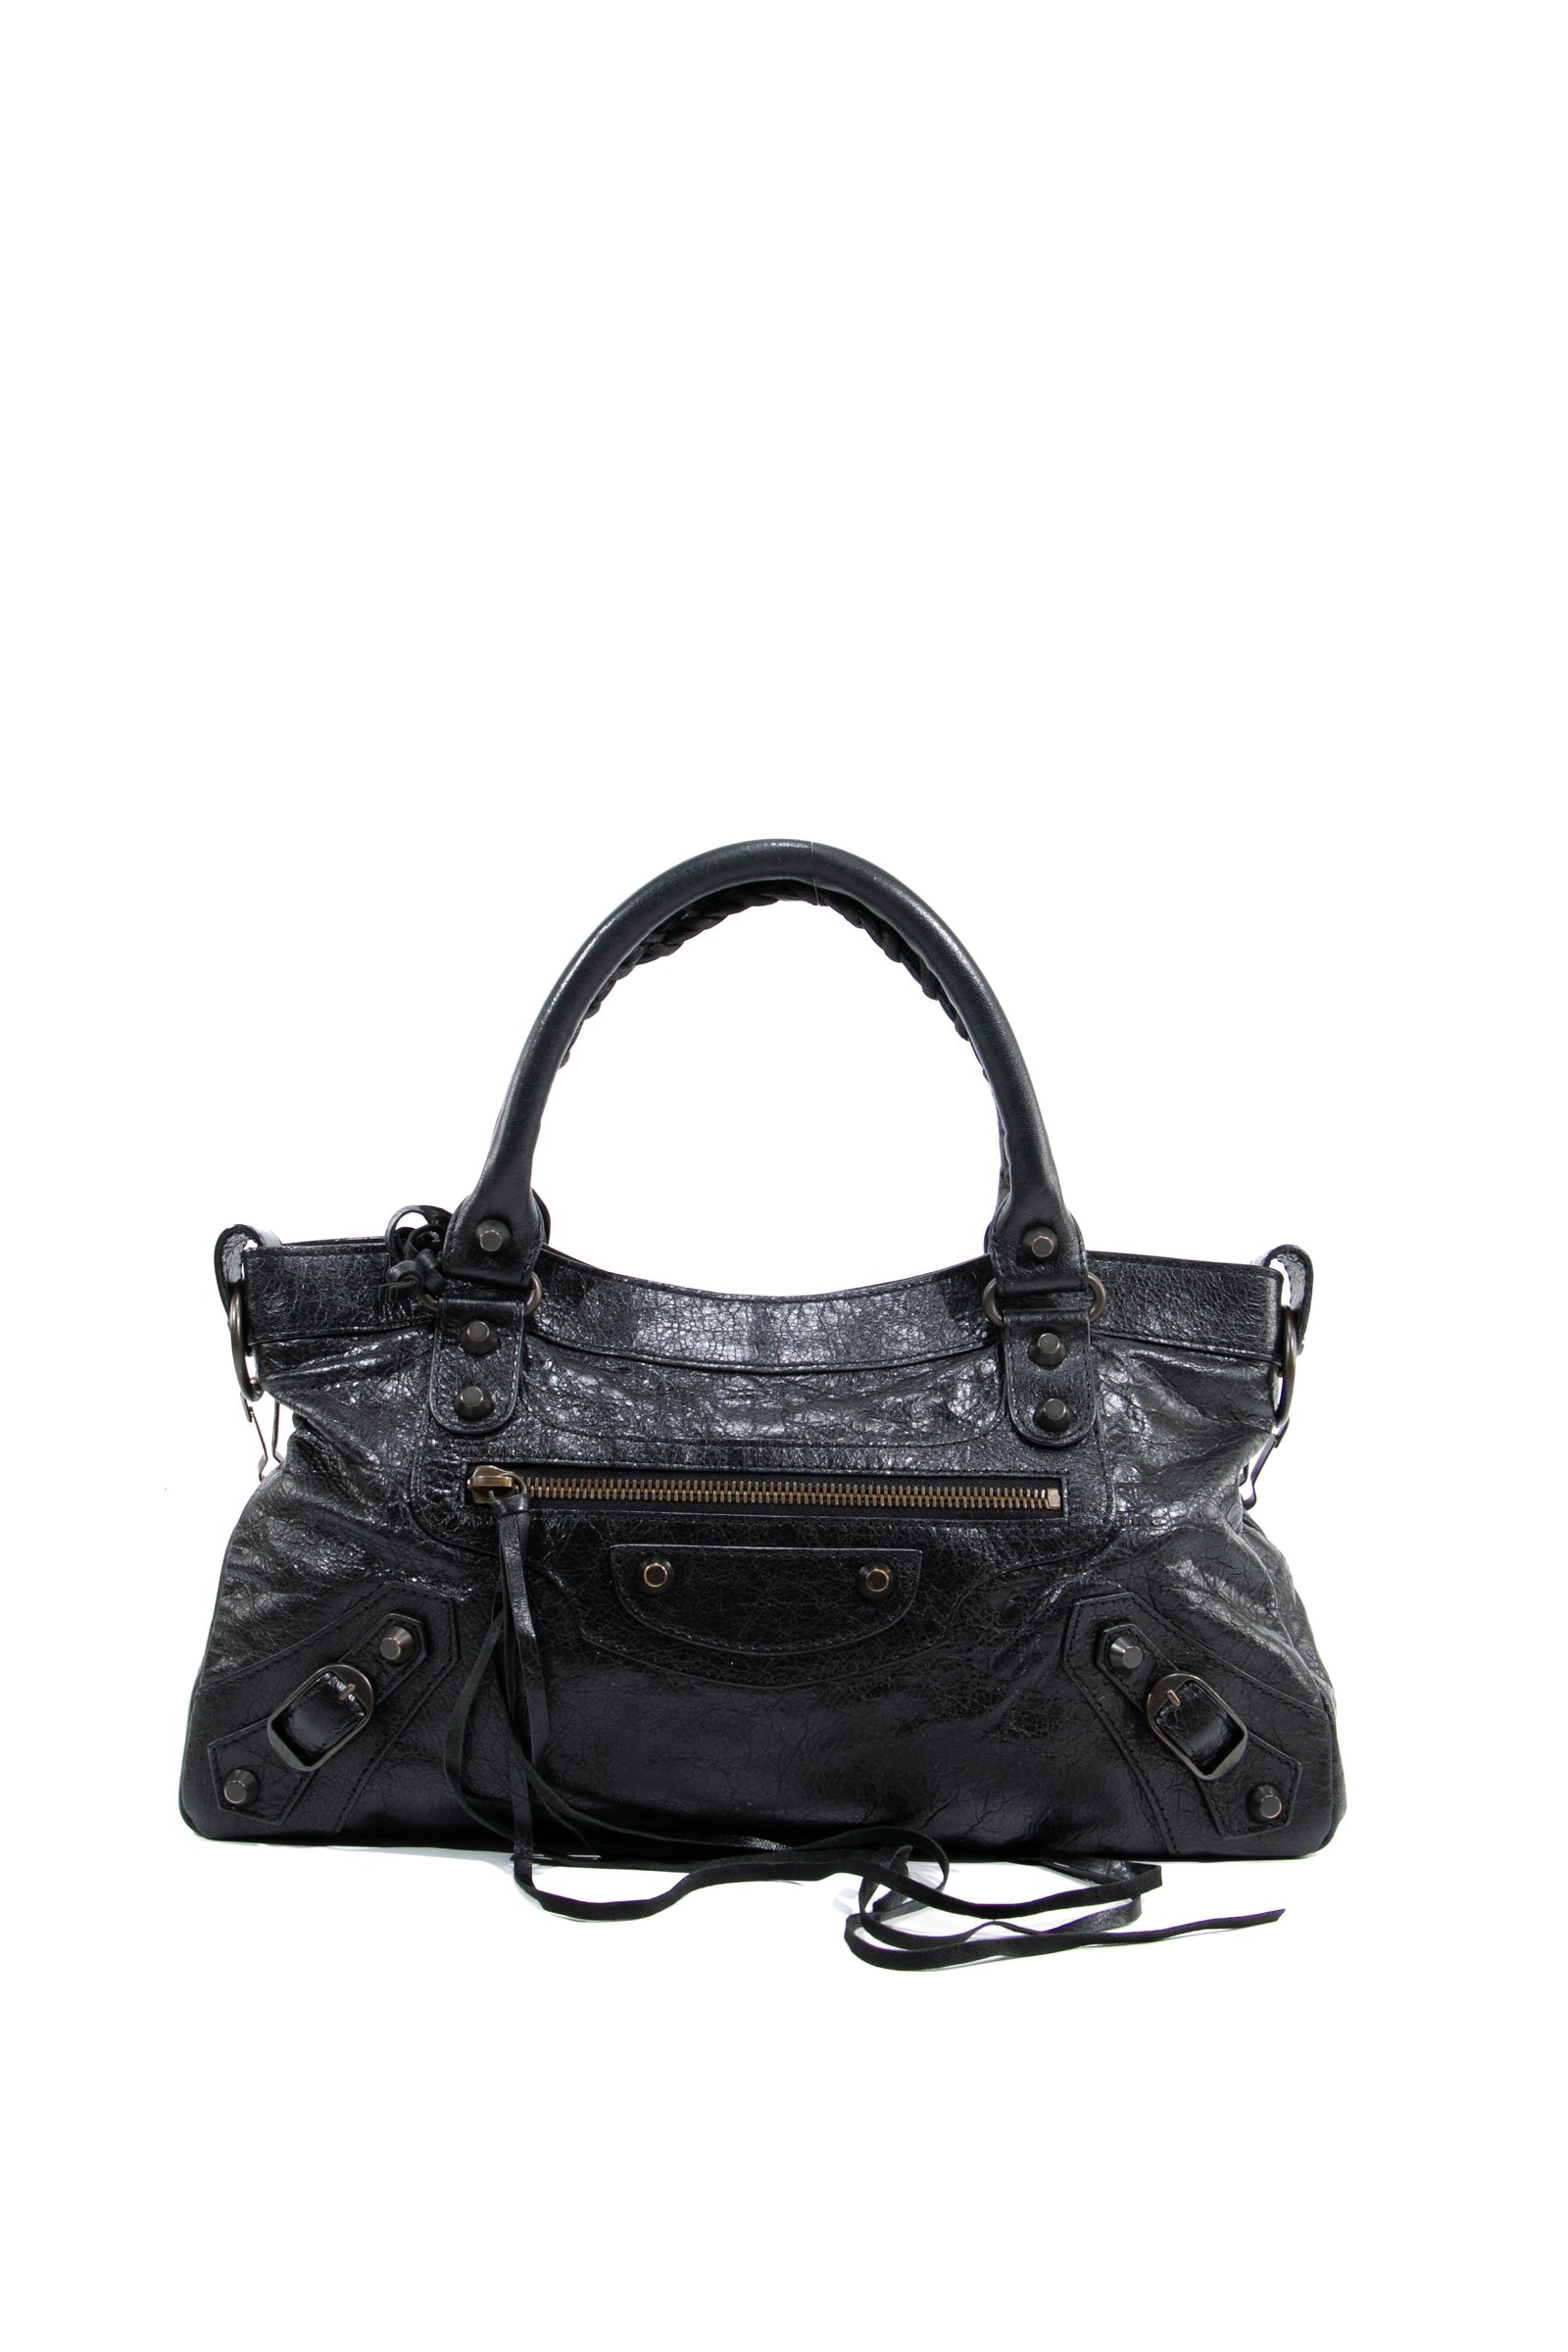 Balenciaga Bags - Find your next Balenciaga Bag at Collector's Cage – Collectors